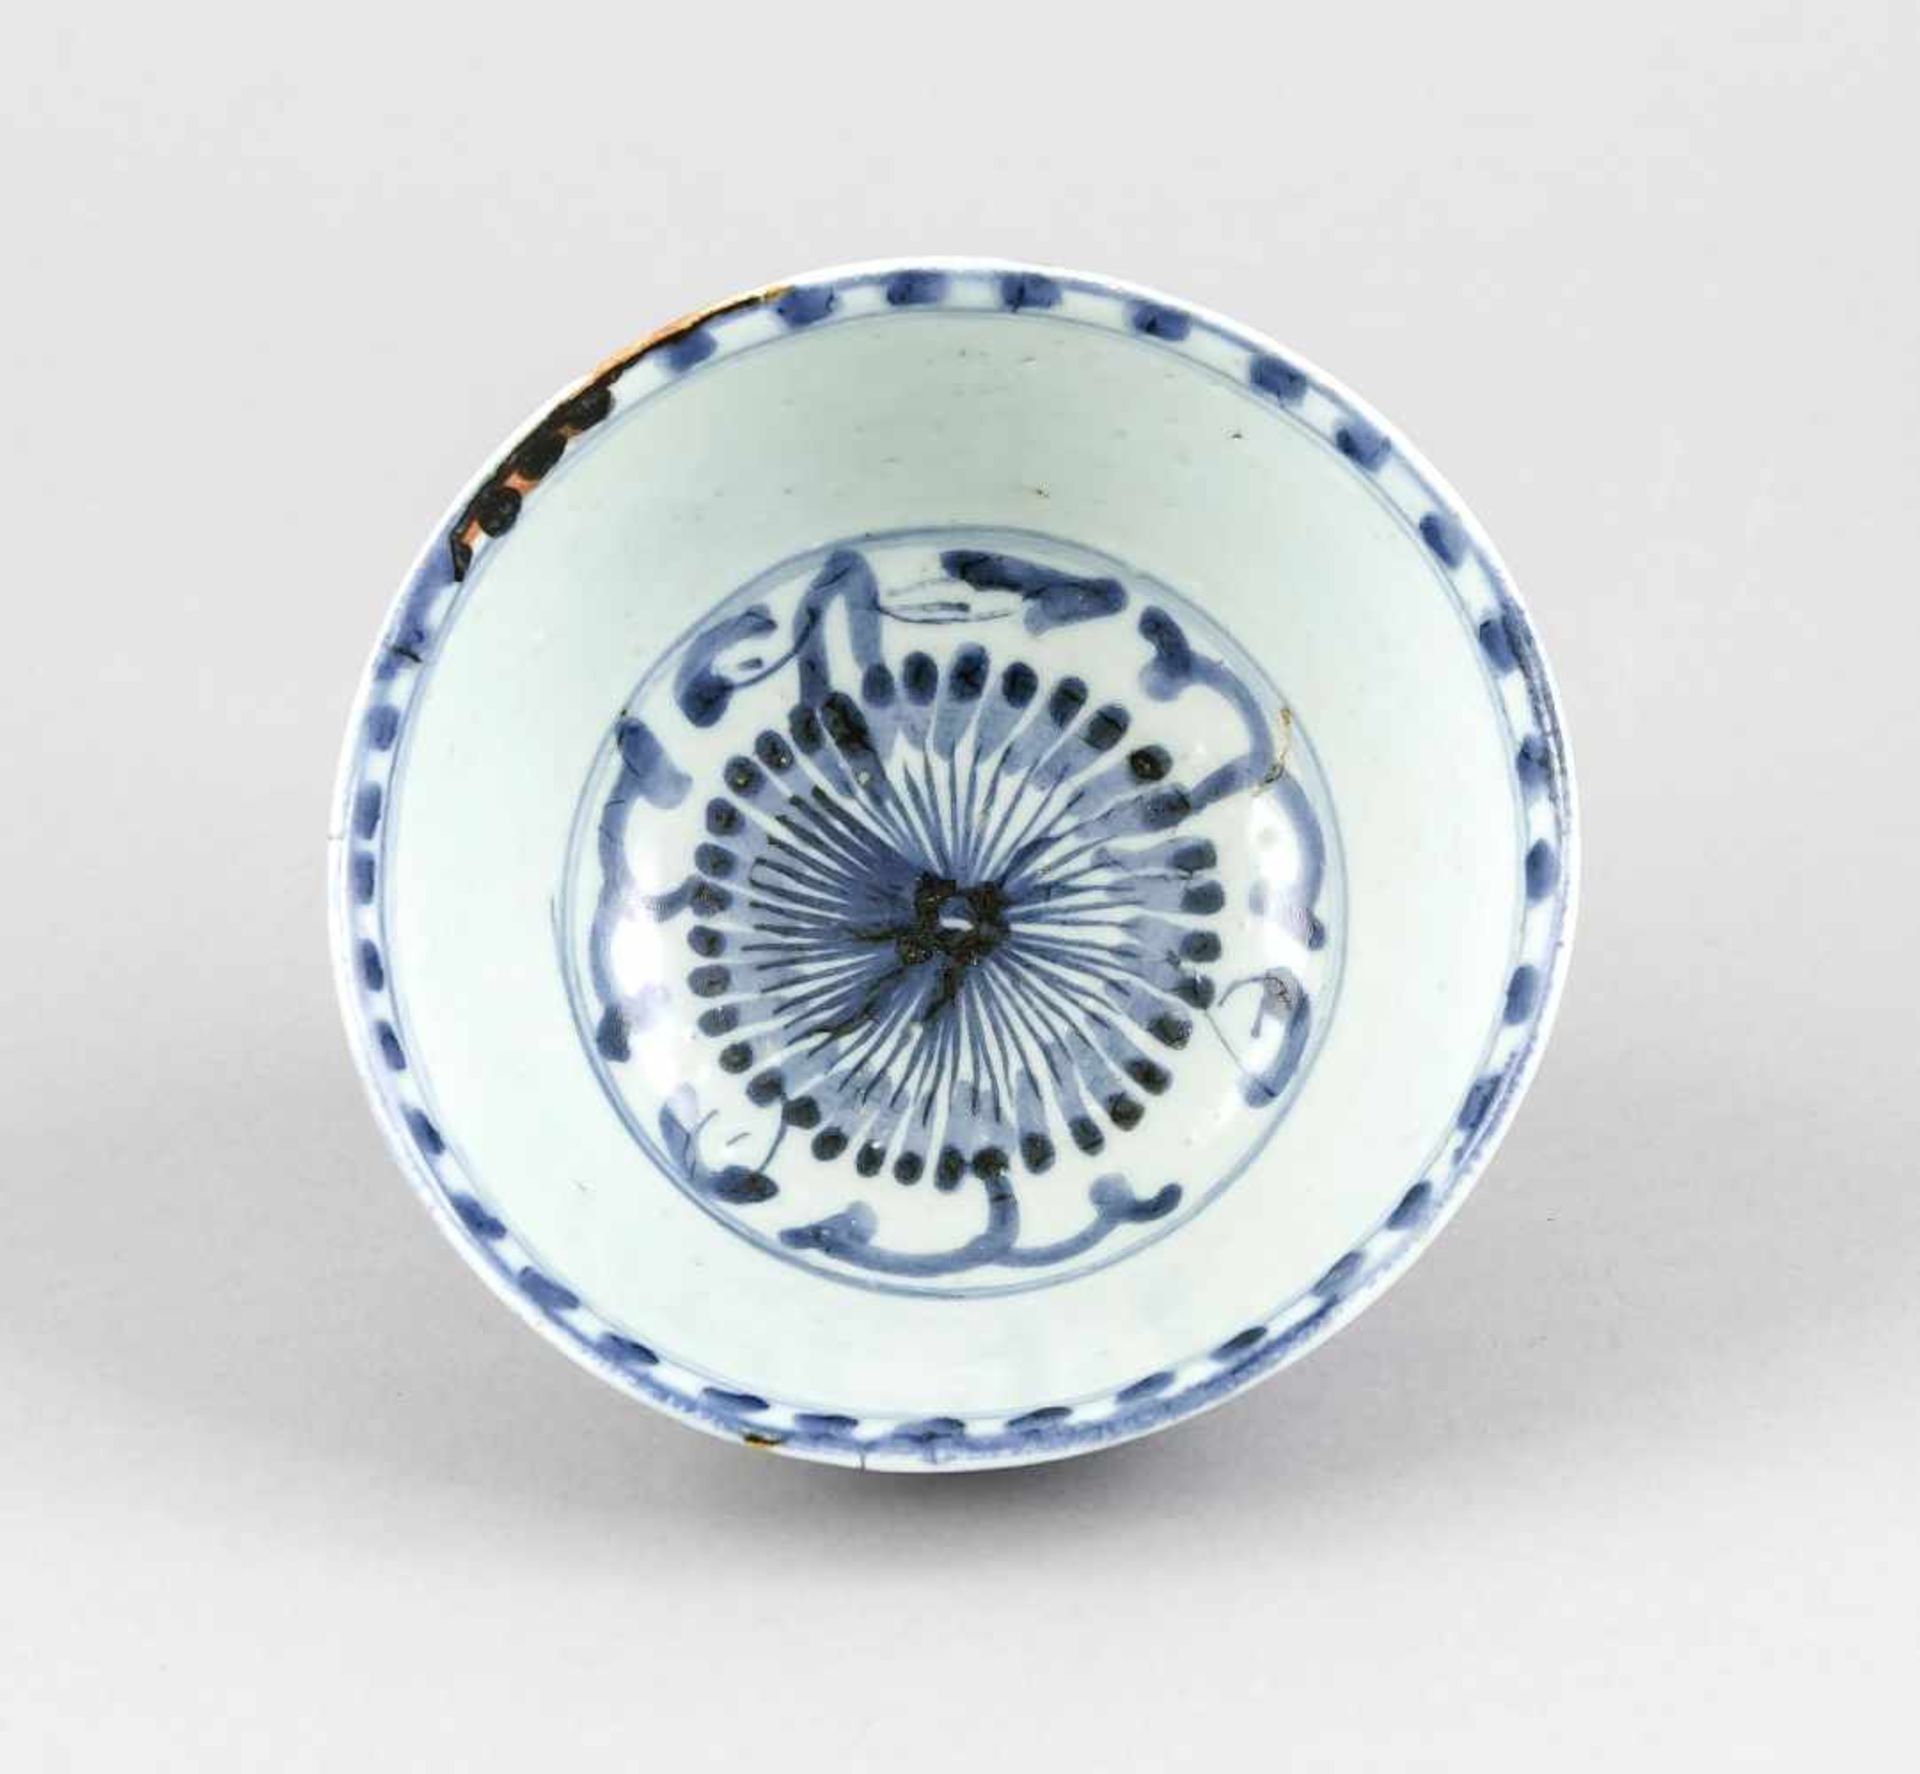 Blau-weiße Schale, China, wohl Ming/Qing-zeitlich, Spiegel und Außenwandung mitBlütenranken-Dekor in